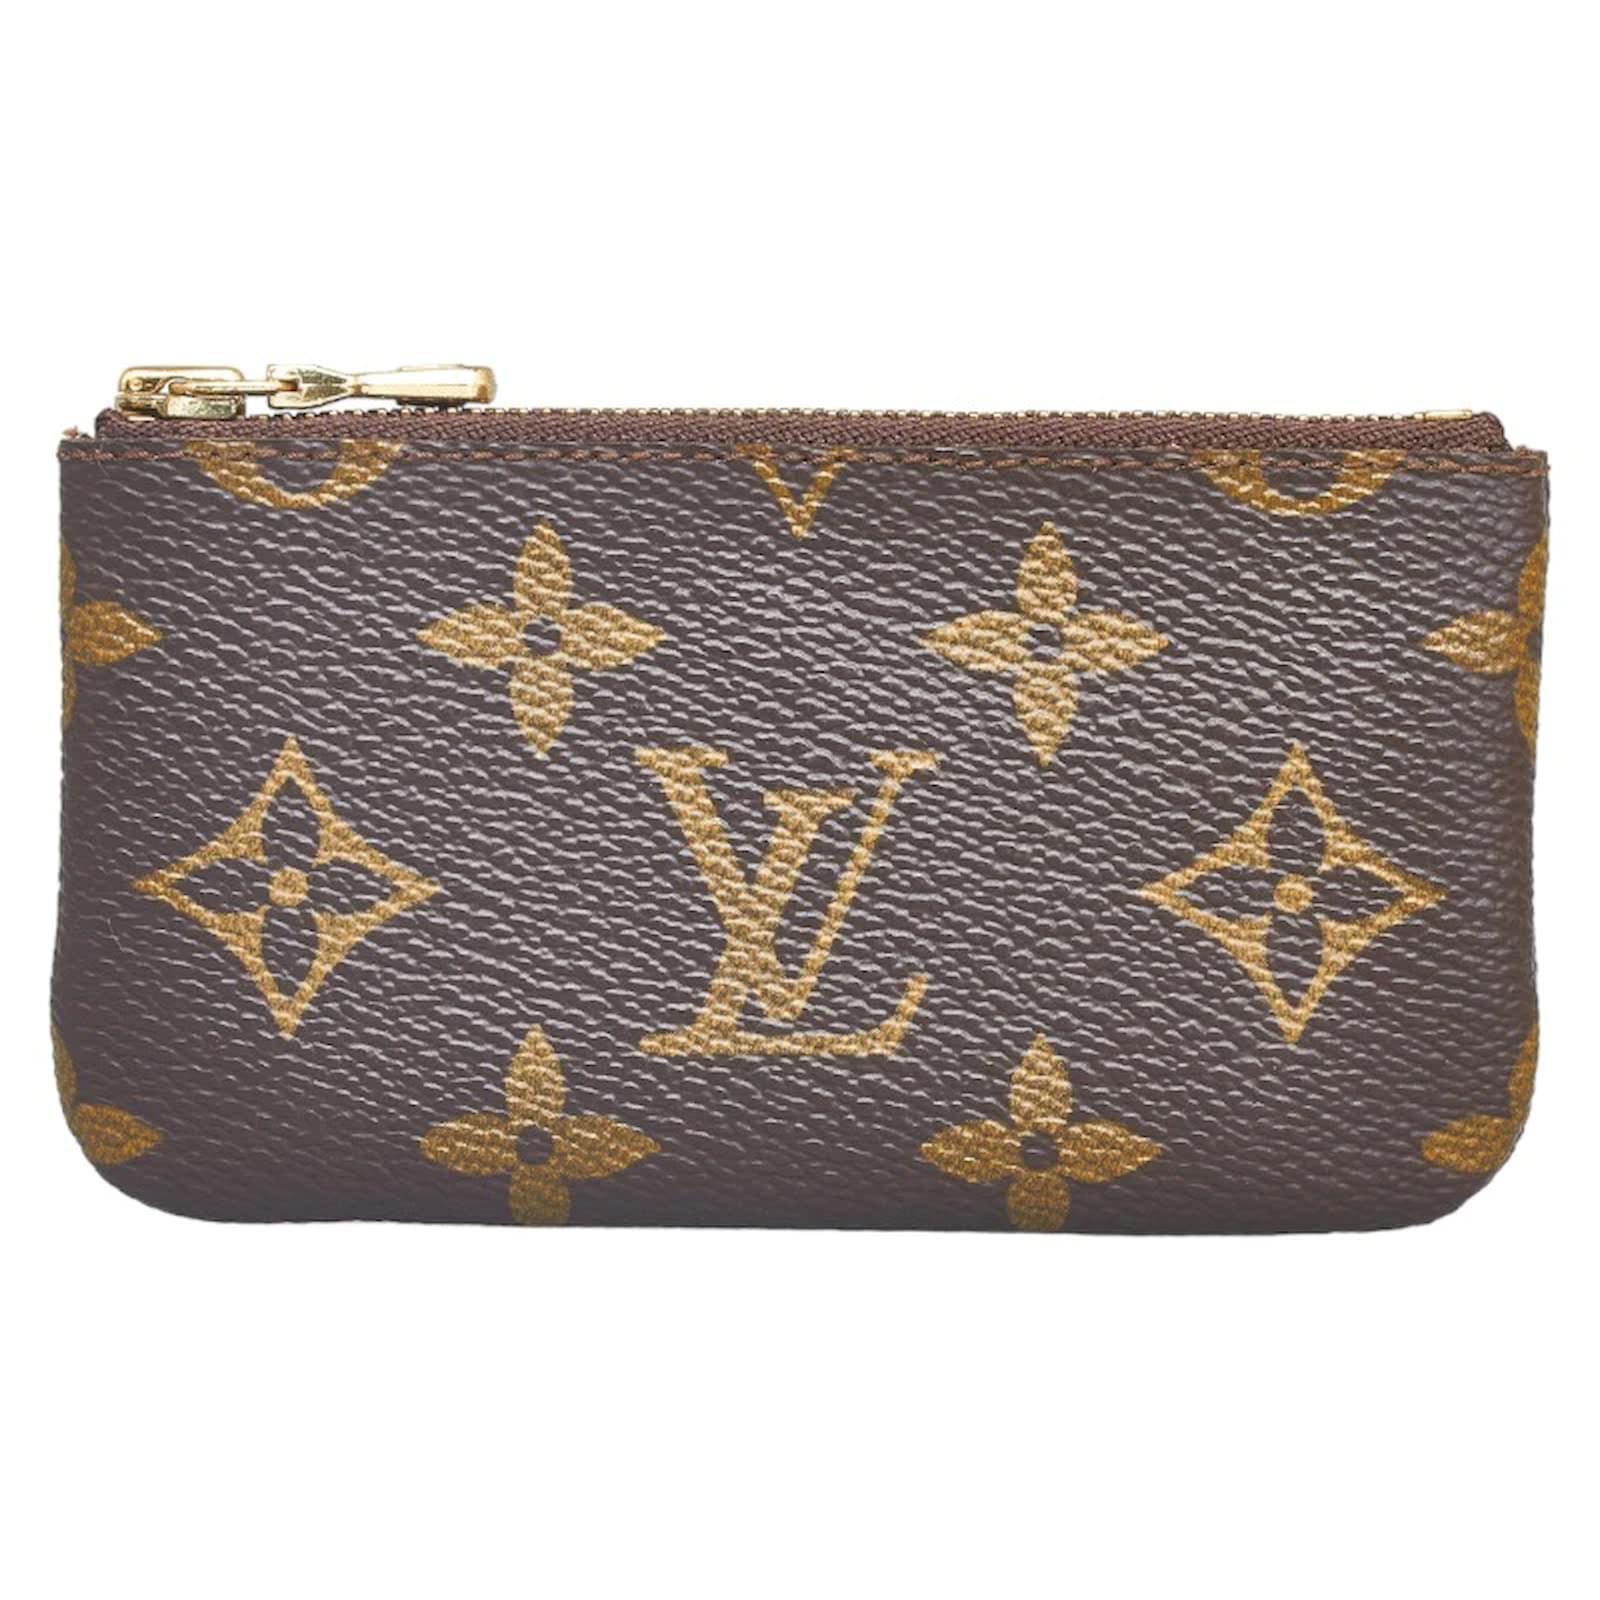 Louis Vuitton Key pouch (M62650)